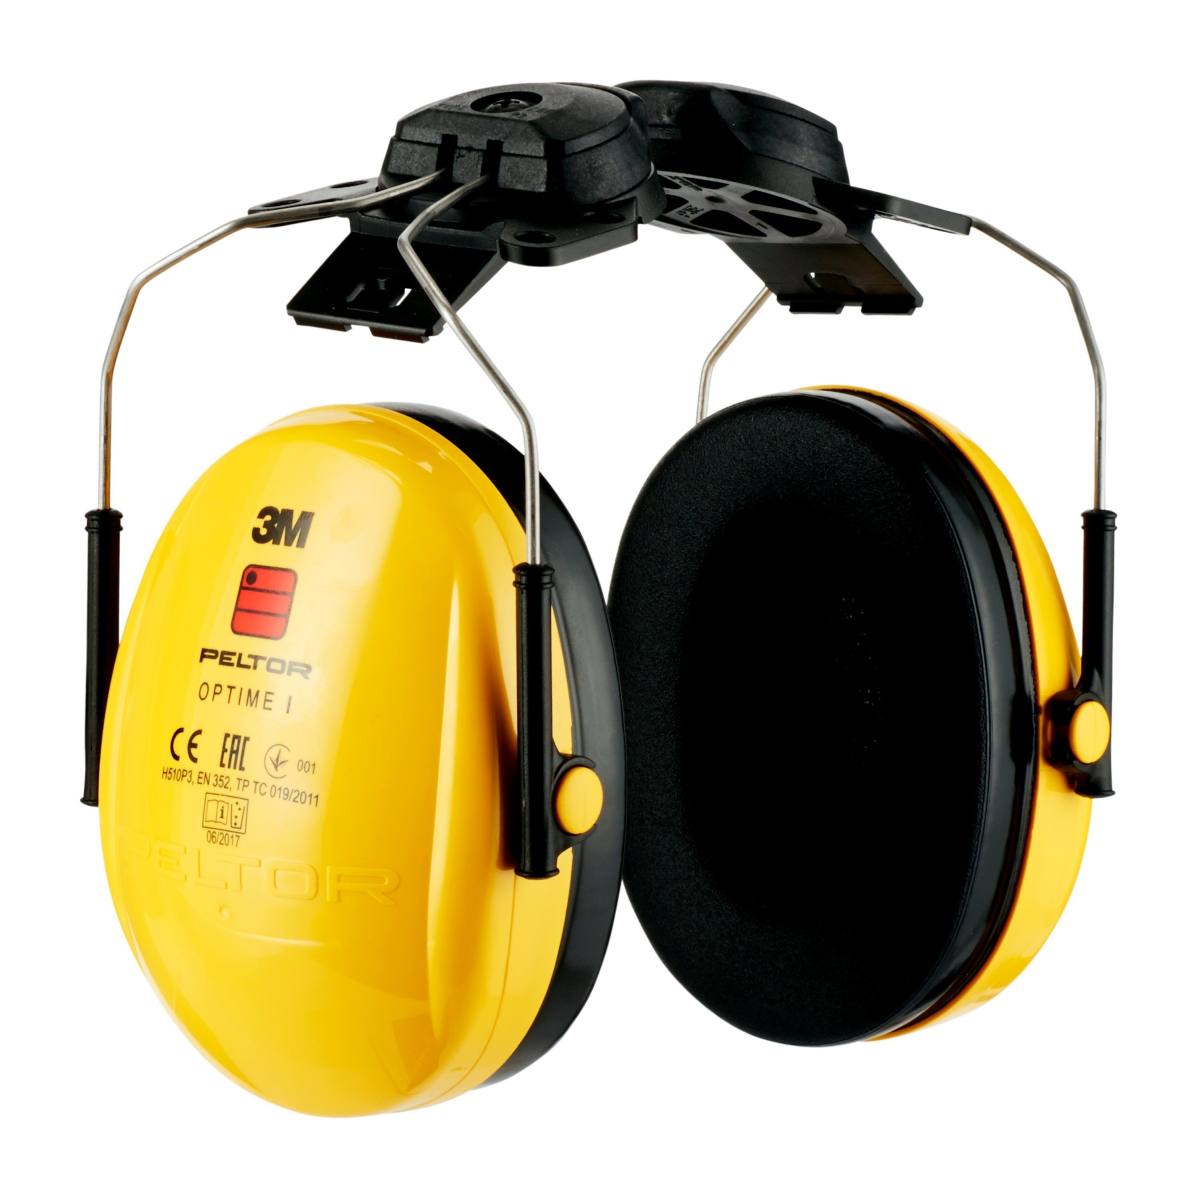 Casque antibruit 3M Peltor Optime I, fixation sur casque, avec adaptateur de casque, H510P3 (87 à 98 dB)